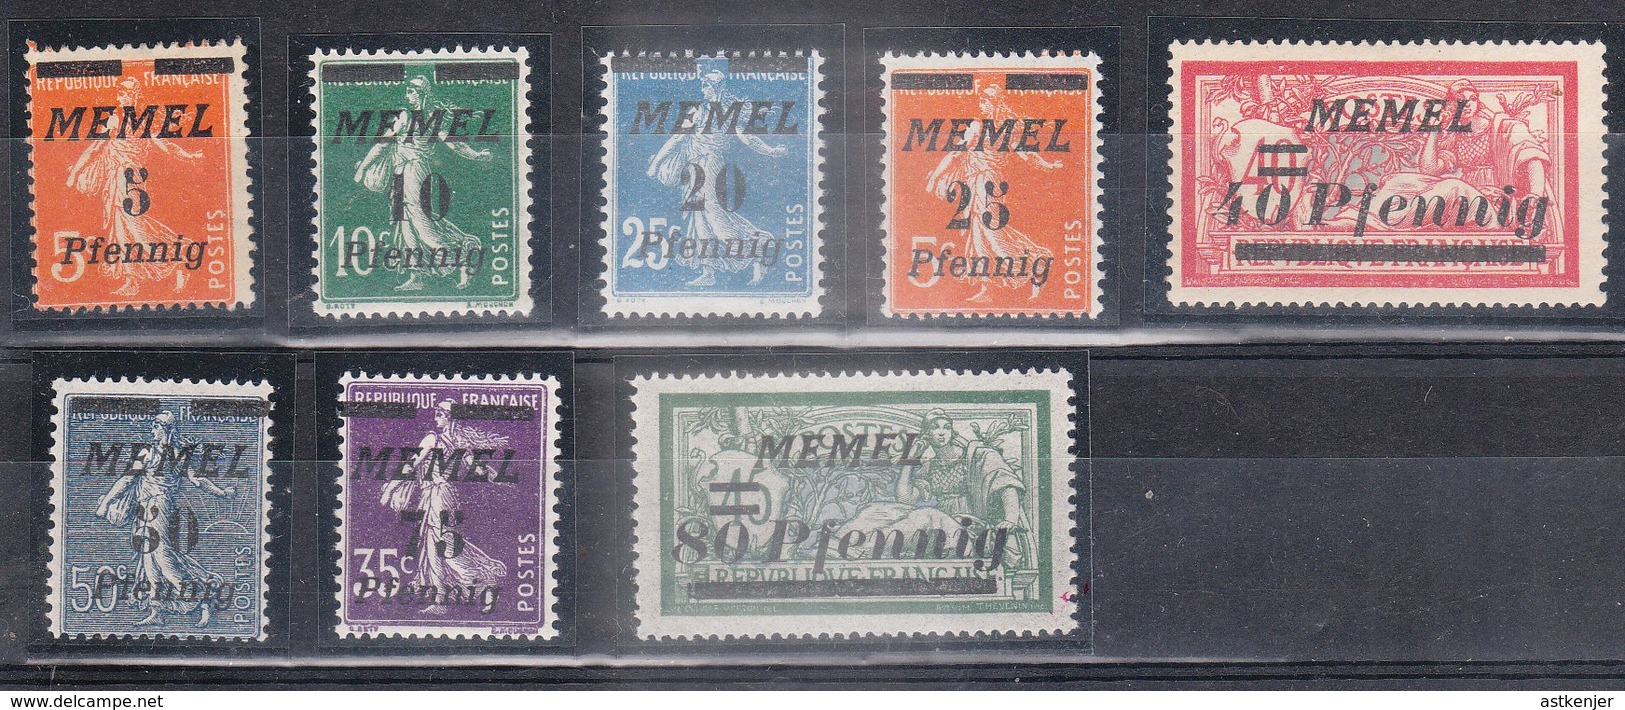 MEMEL - Petite Collection De 8 Timbres (année 1922)  - TOP AFFAIRE - Neufs